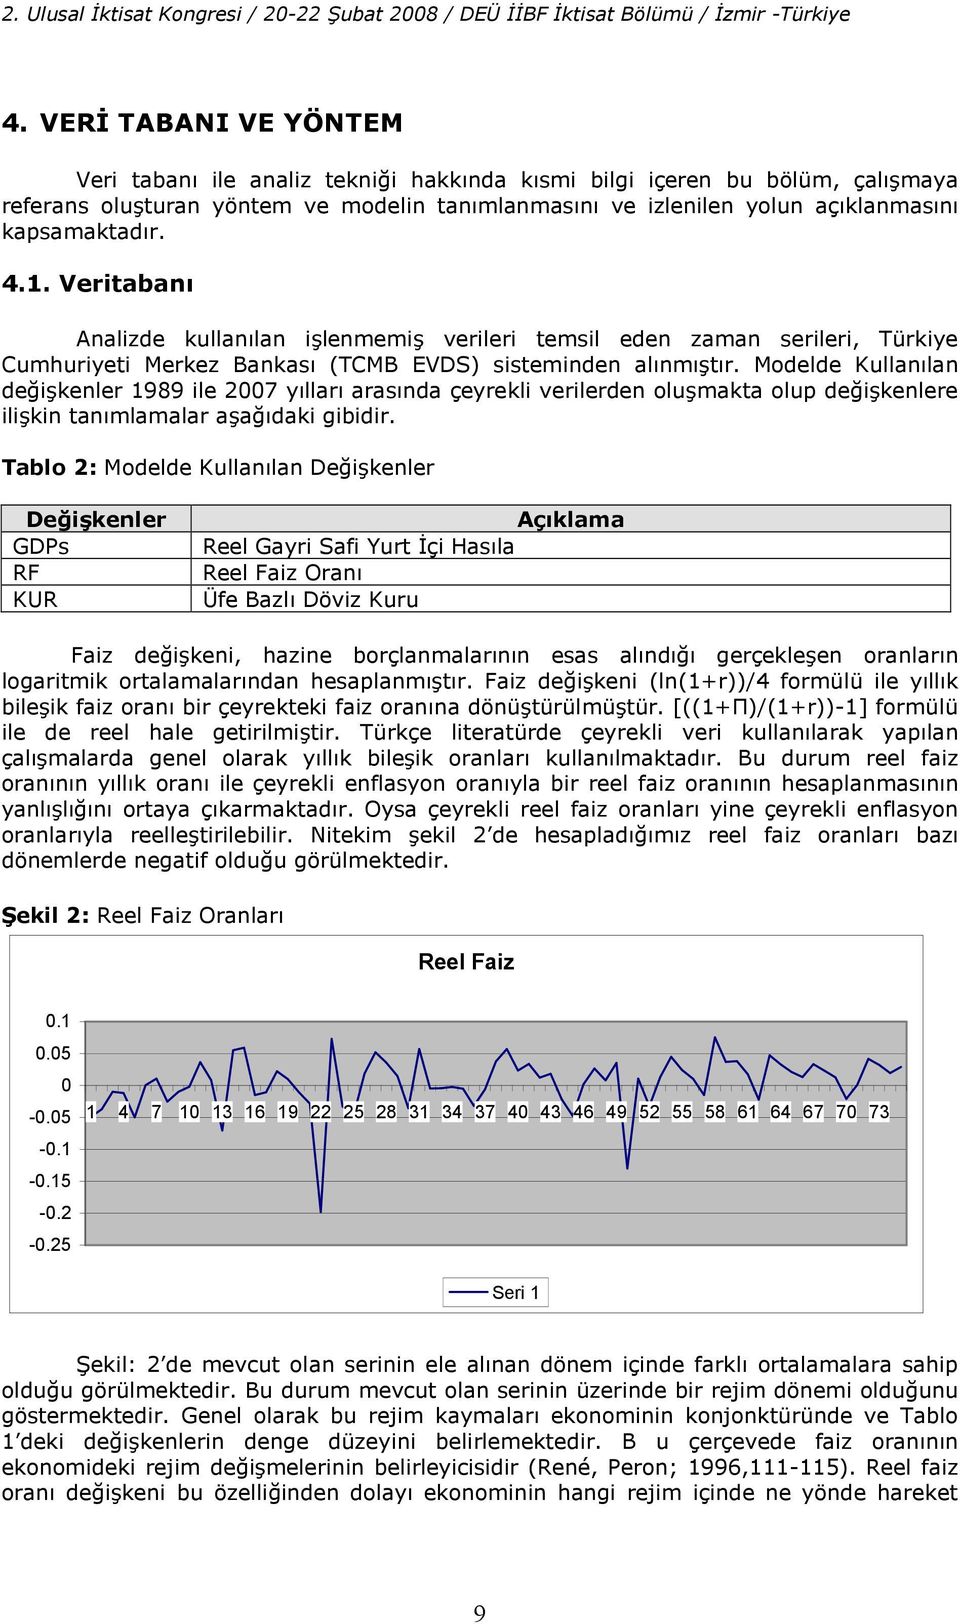 Veriaban Analizde kullanlan ilenmemi verileri emsil eden zaman serileri, Türkiye Cumhuriyei Merkez Bankas (TCMB EVDS) siseminden alnmr.